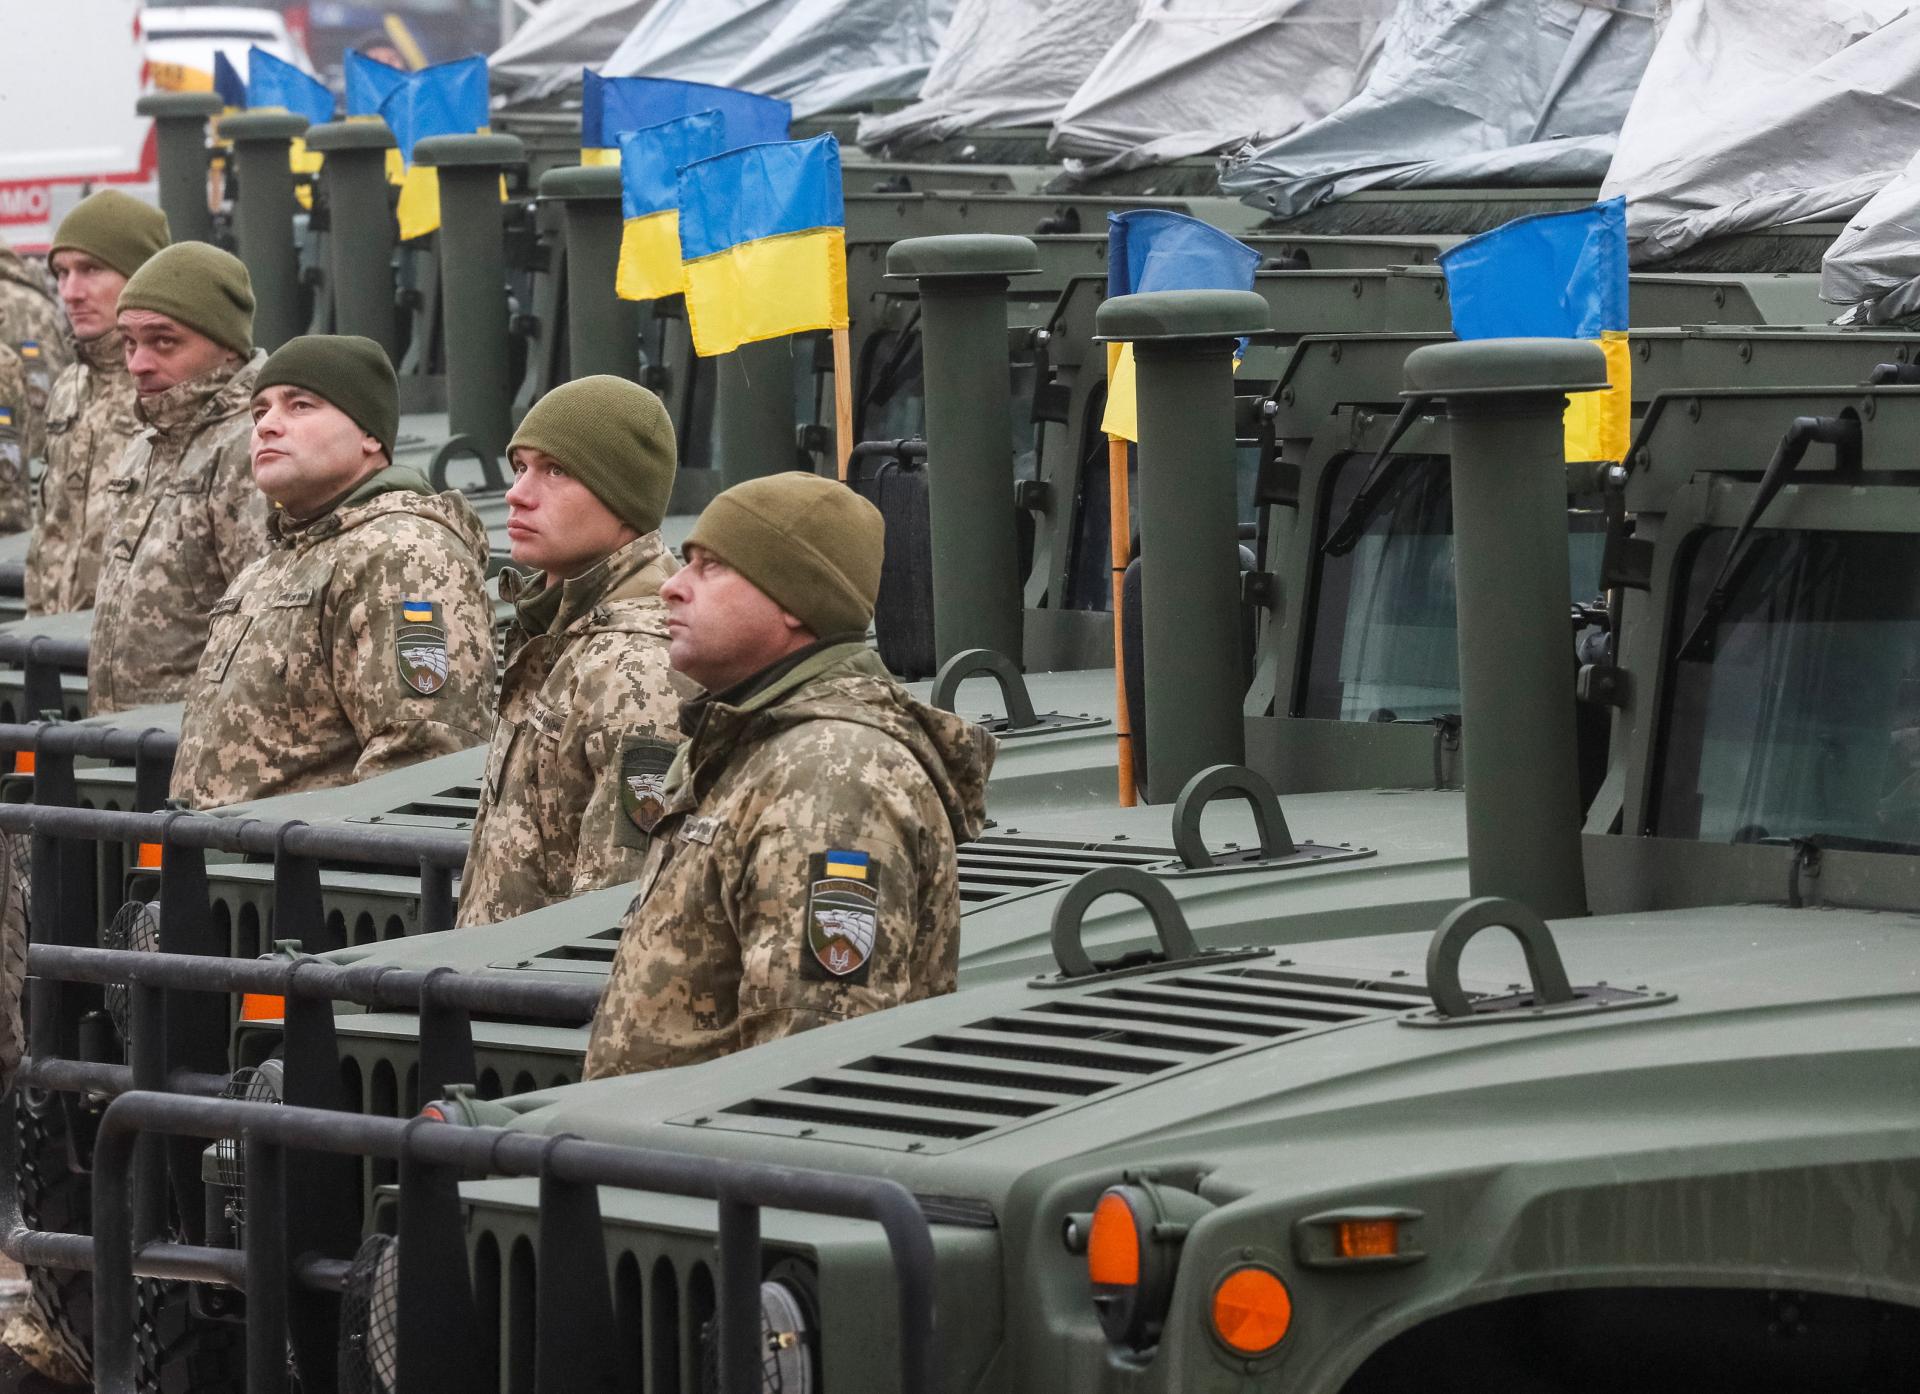 Akú veľkú prevahu má skutočne Rusko nad Ukrajinou? Spočítali sme, koľko vojakov môže bojovať na oboch stranách